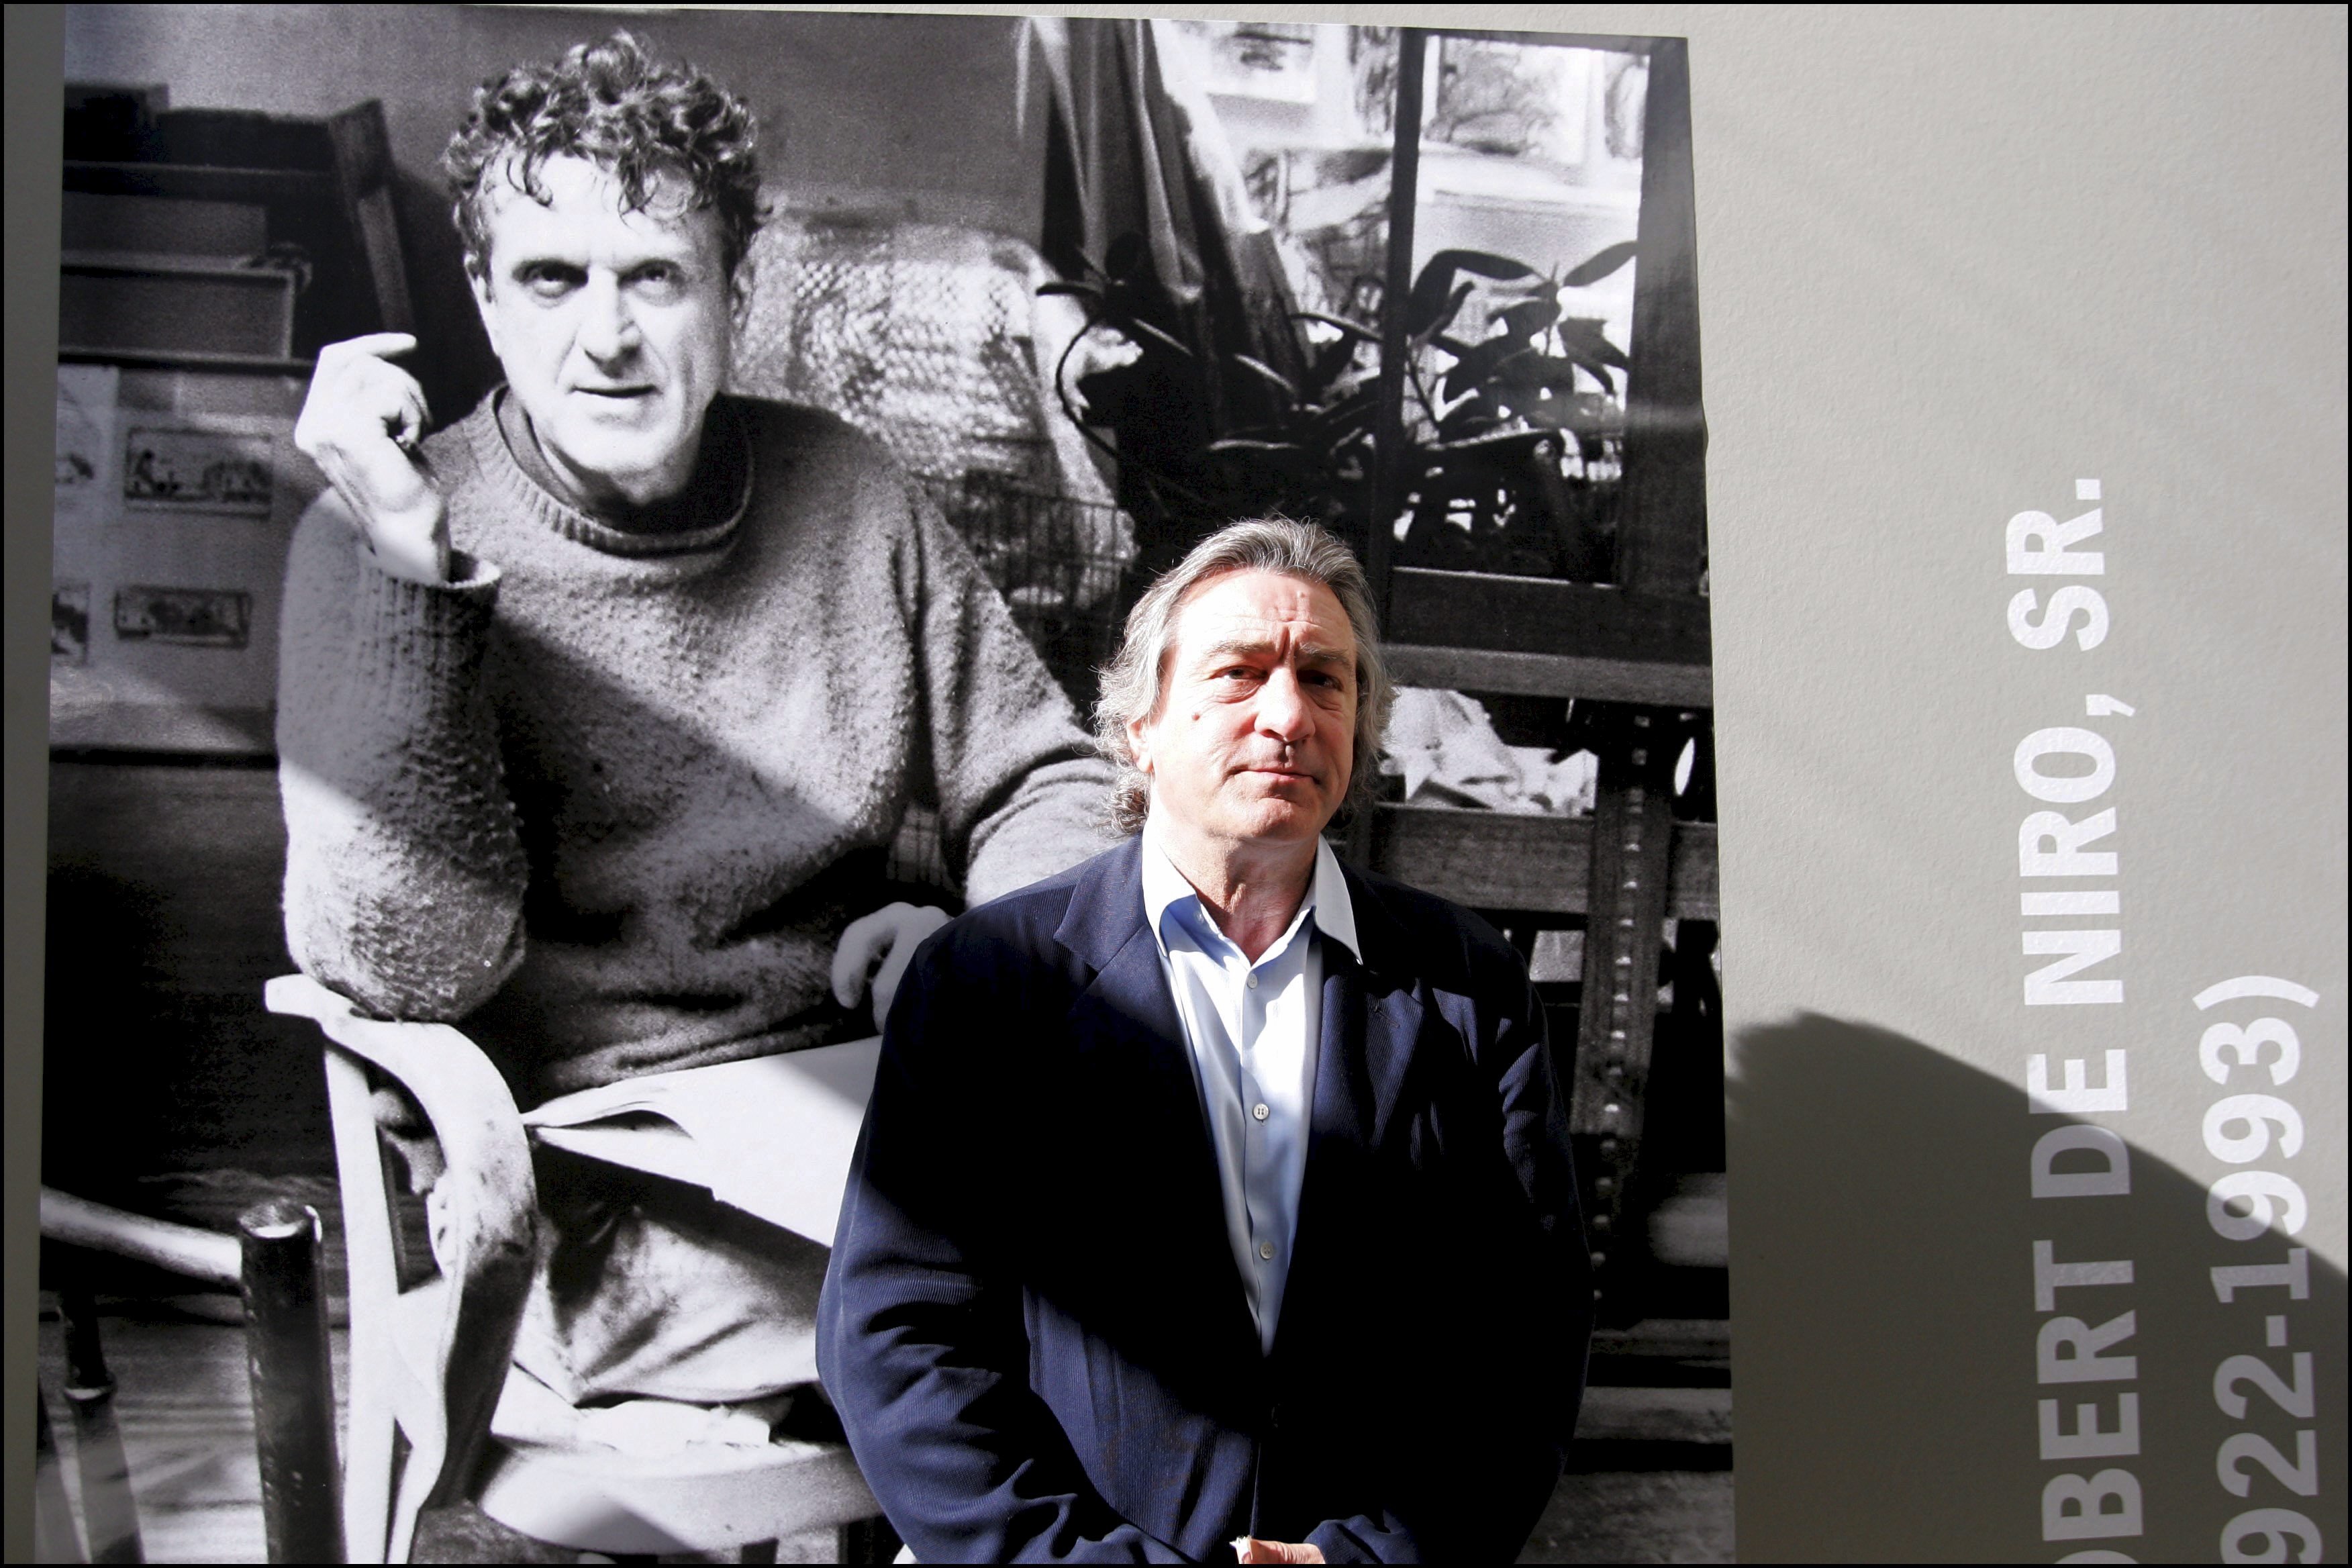 Robert De Niro posa junto a un retrato de su padre Robert Sr. en una exposición de pinturas de Robert De Niro Sr. en La Piscine en Roubaix, Francia el 18 de junio de 2005 | Foto: Getty Images